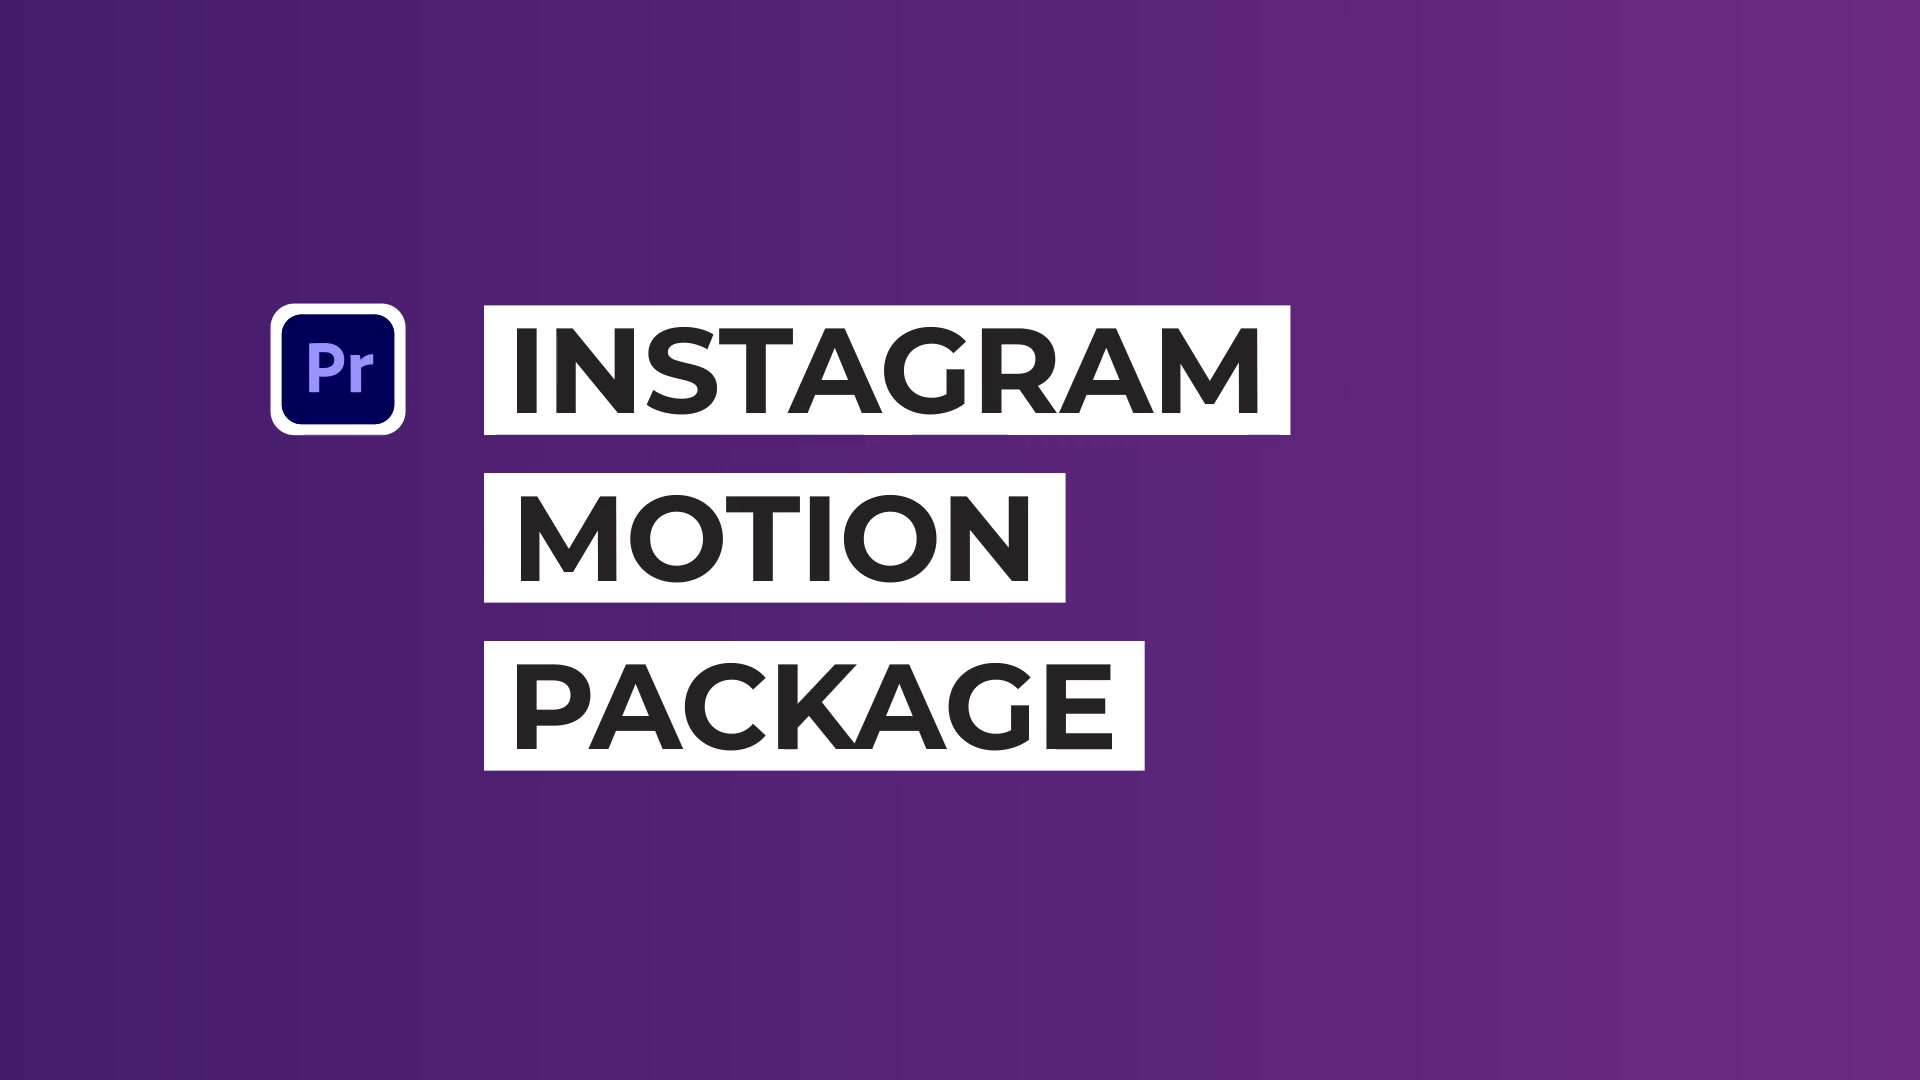 Instagram Motion Pack | Premiere Pro MOGRT Videohive 37367741 Premiere Pro Image 13